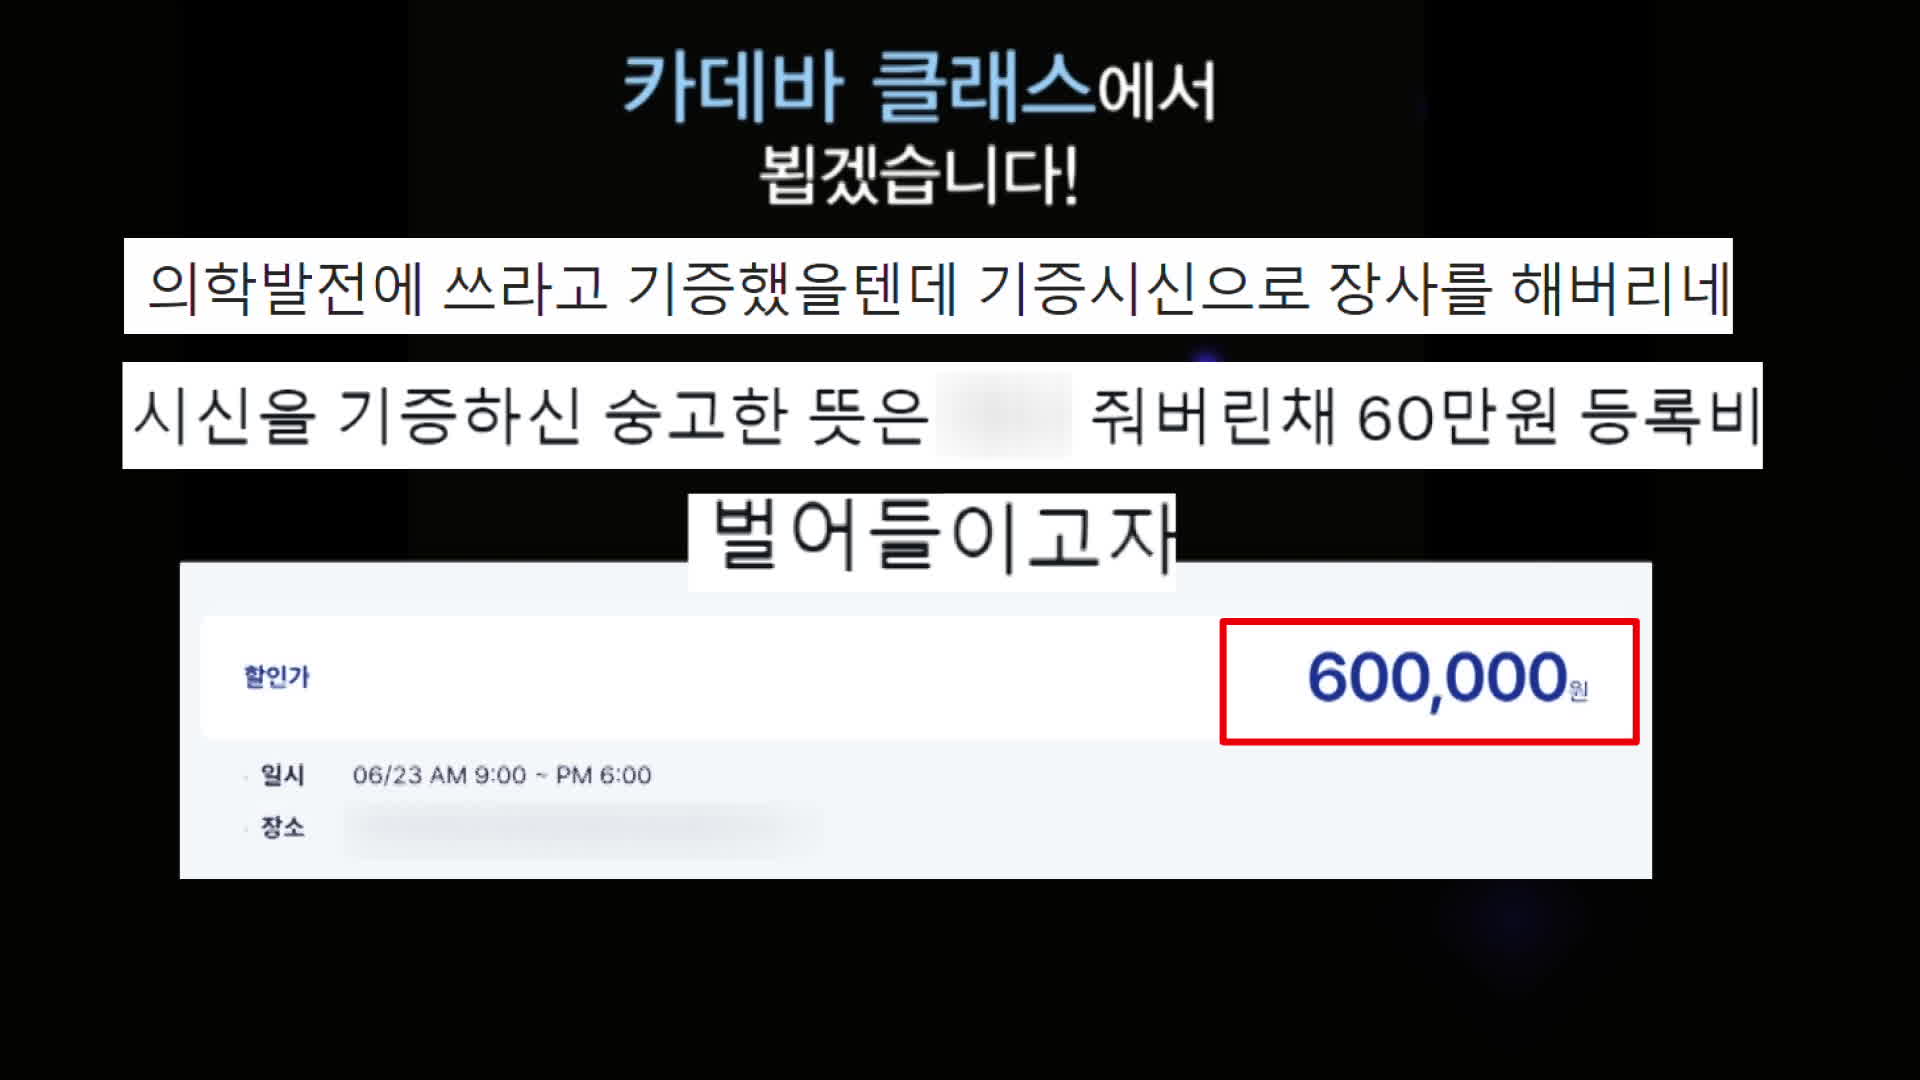 “신선한 시신이라니”…‘60만 원’ 해부학 강의 논란